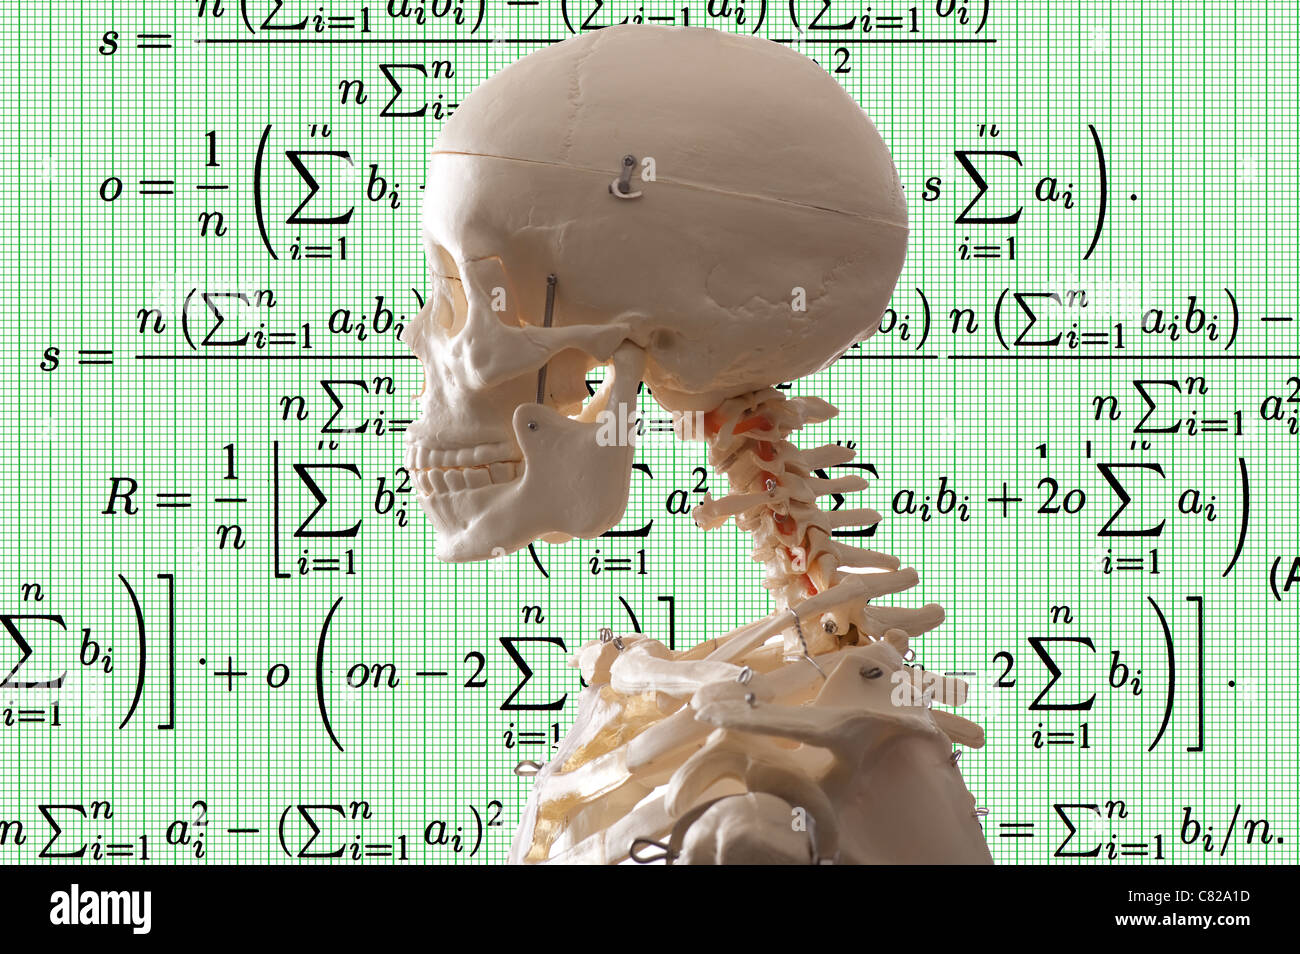 concept image skeleton and mathematical symbols background Stock Photo